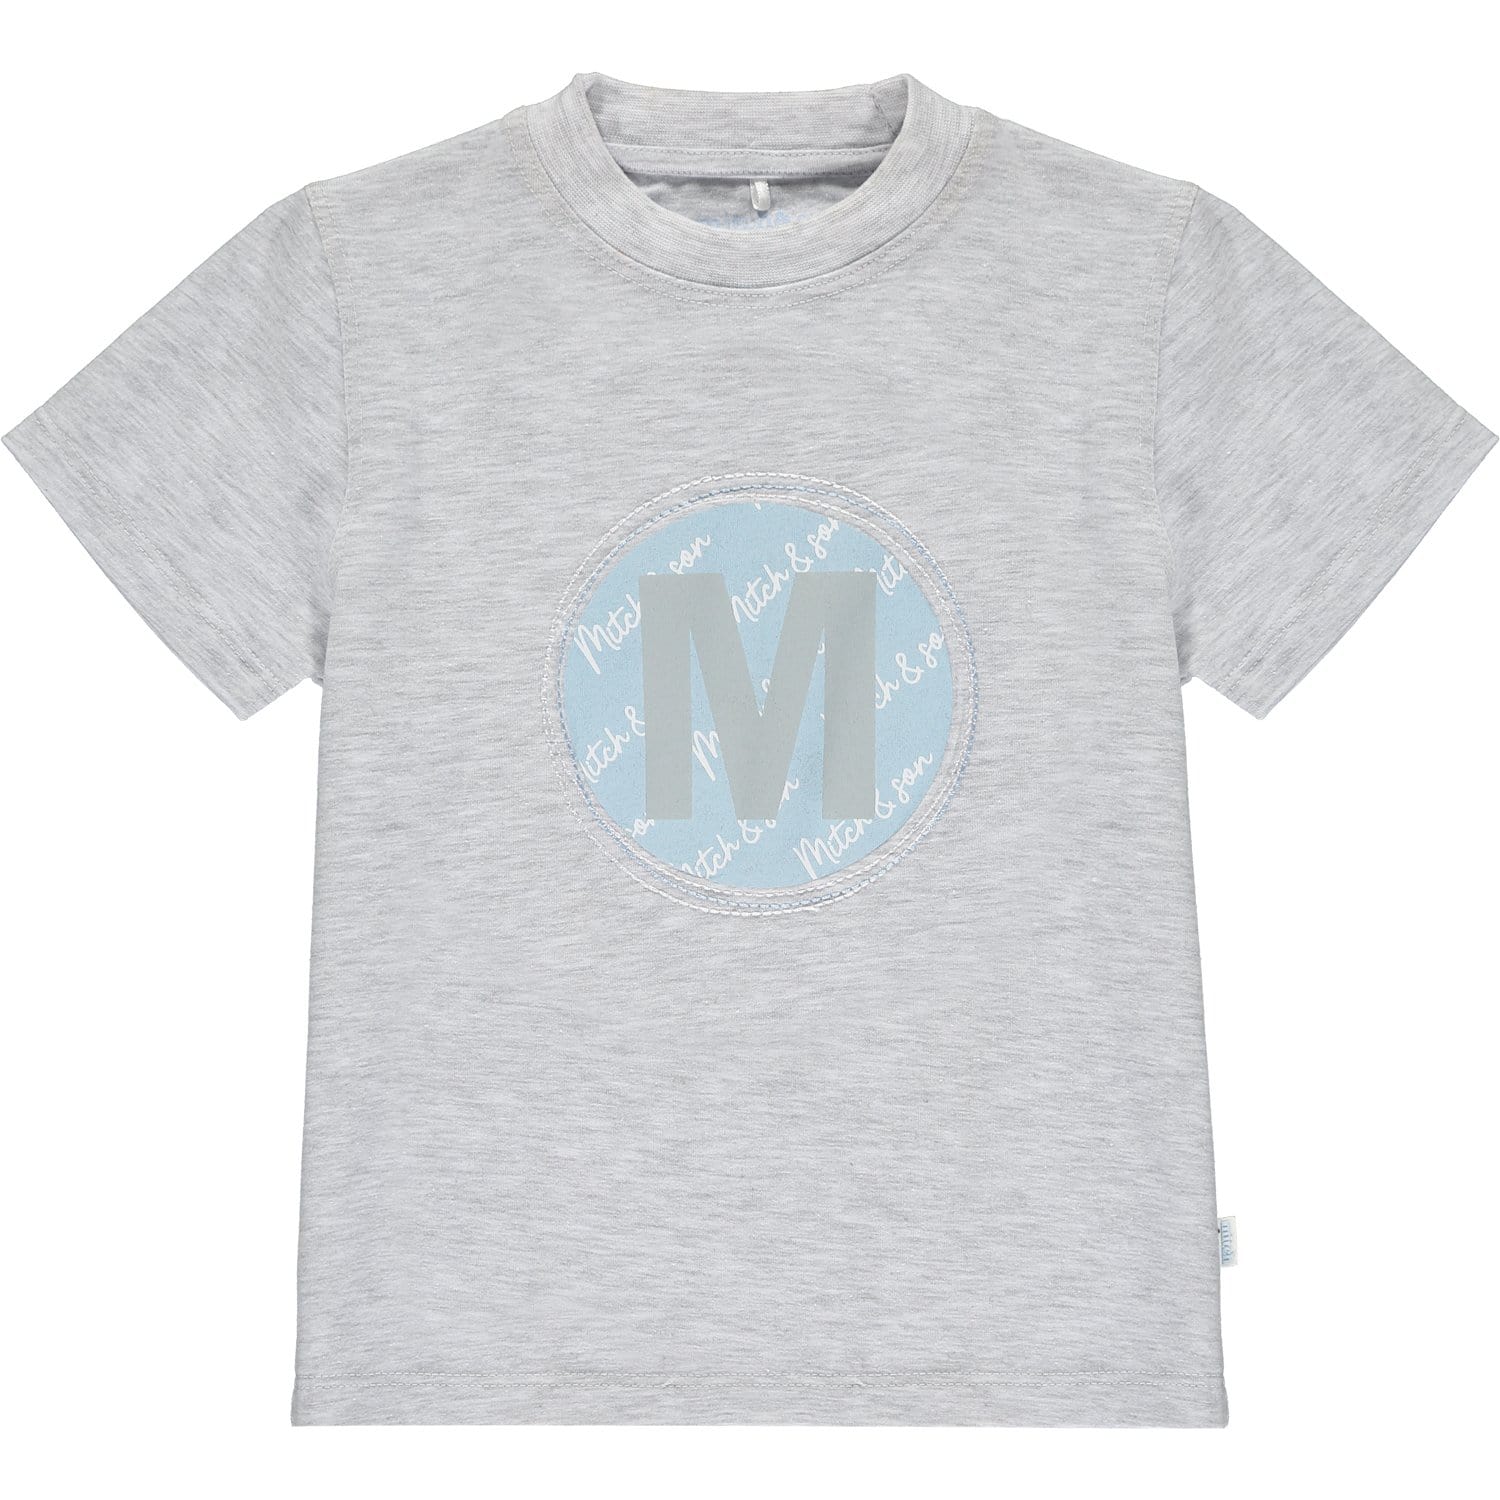 MITCH & SON - Adam M Logo Jersey Set- Grey